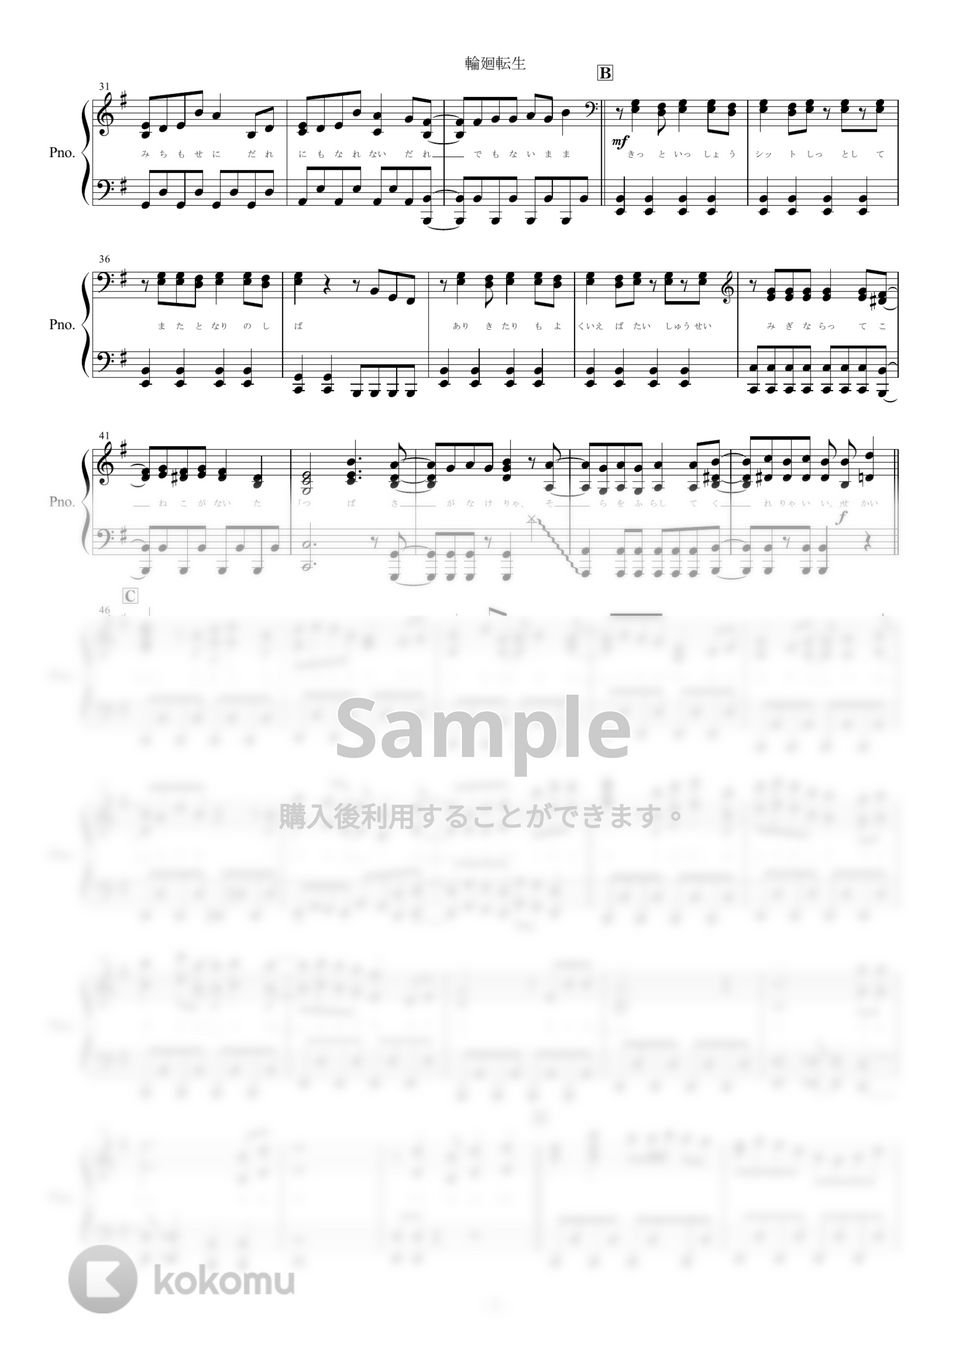 まふまふ - 輪廻転生 (ピアノ楽譜/全６ページ) by yoshi